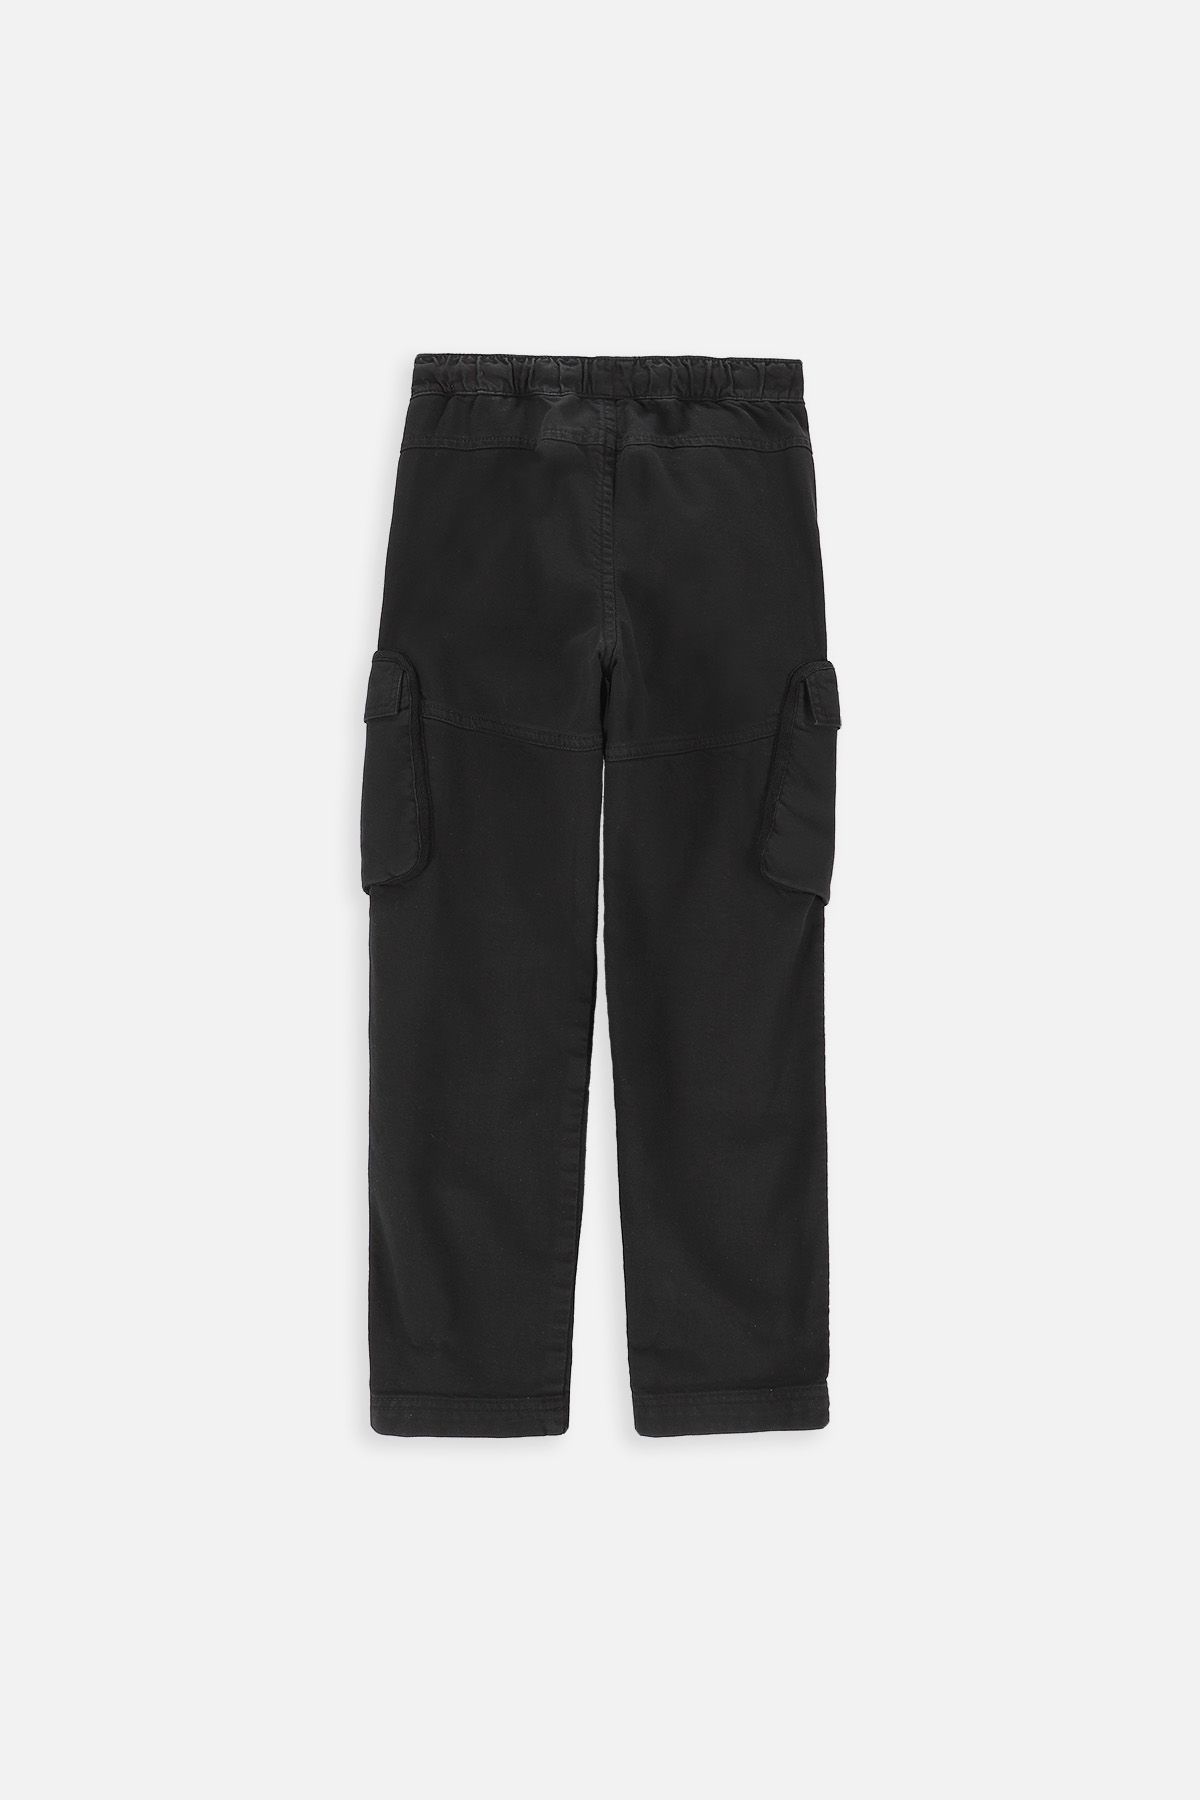 Spodnie jeansowe czarne cargo z kieszeniami o fasonie REGULAR 2219326